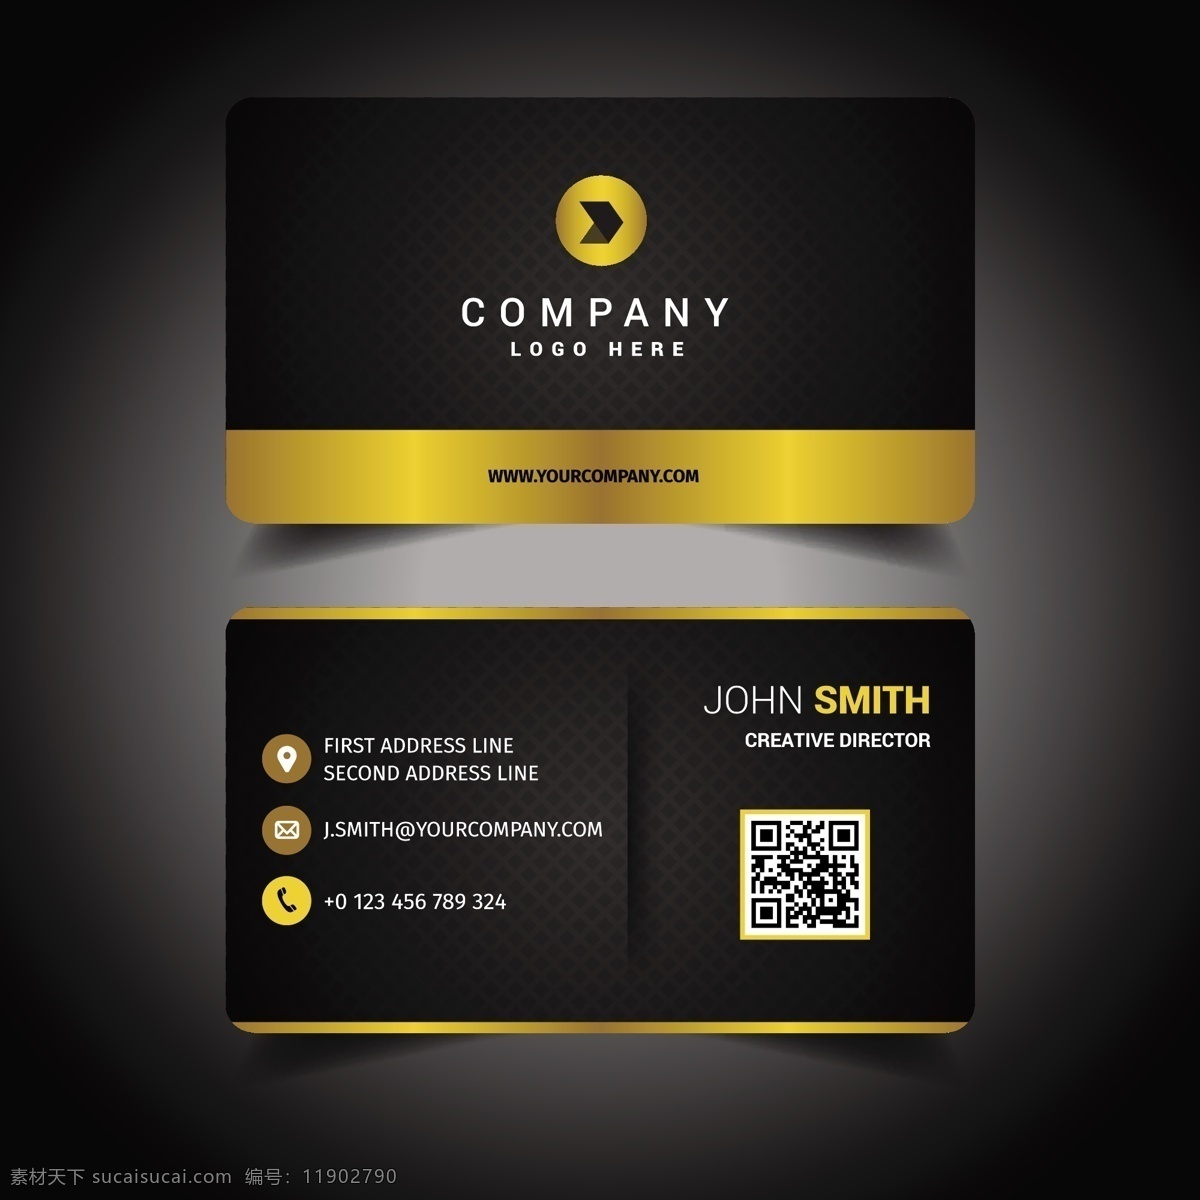 名片模板设计 商标 名片 商业 黄金 抽象 卡片 模板 办公室 颜色 展示 文具 公司 抽象标志 企业标识 现代 身份 身份证